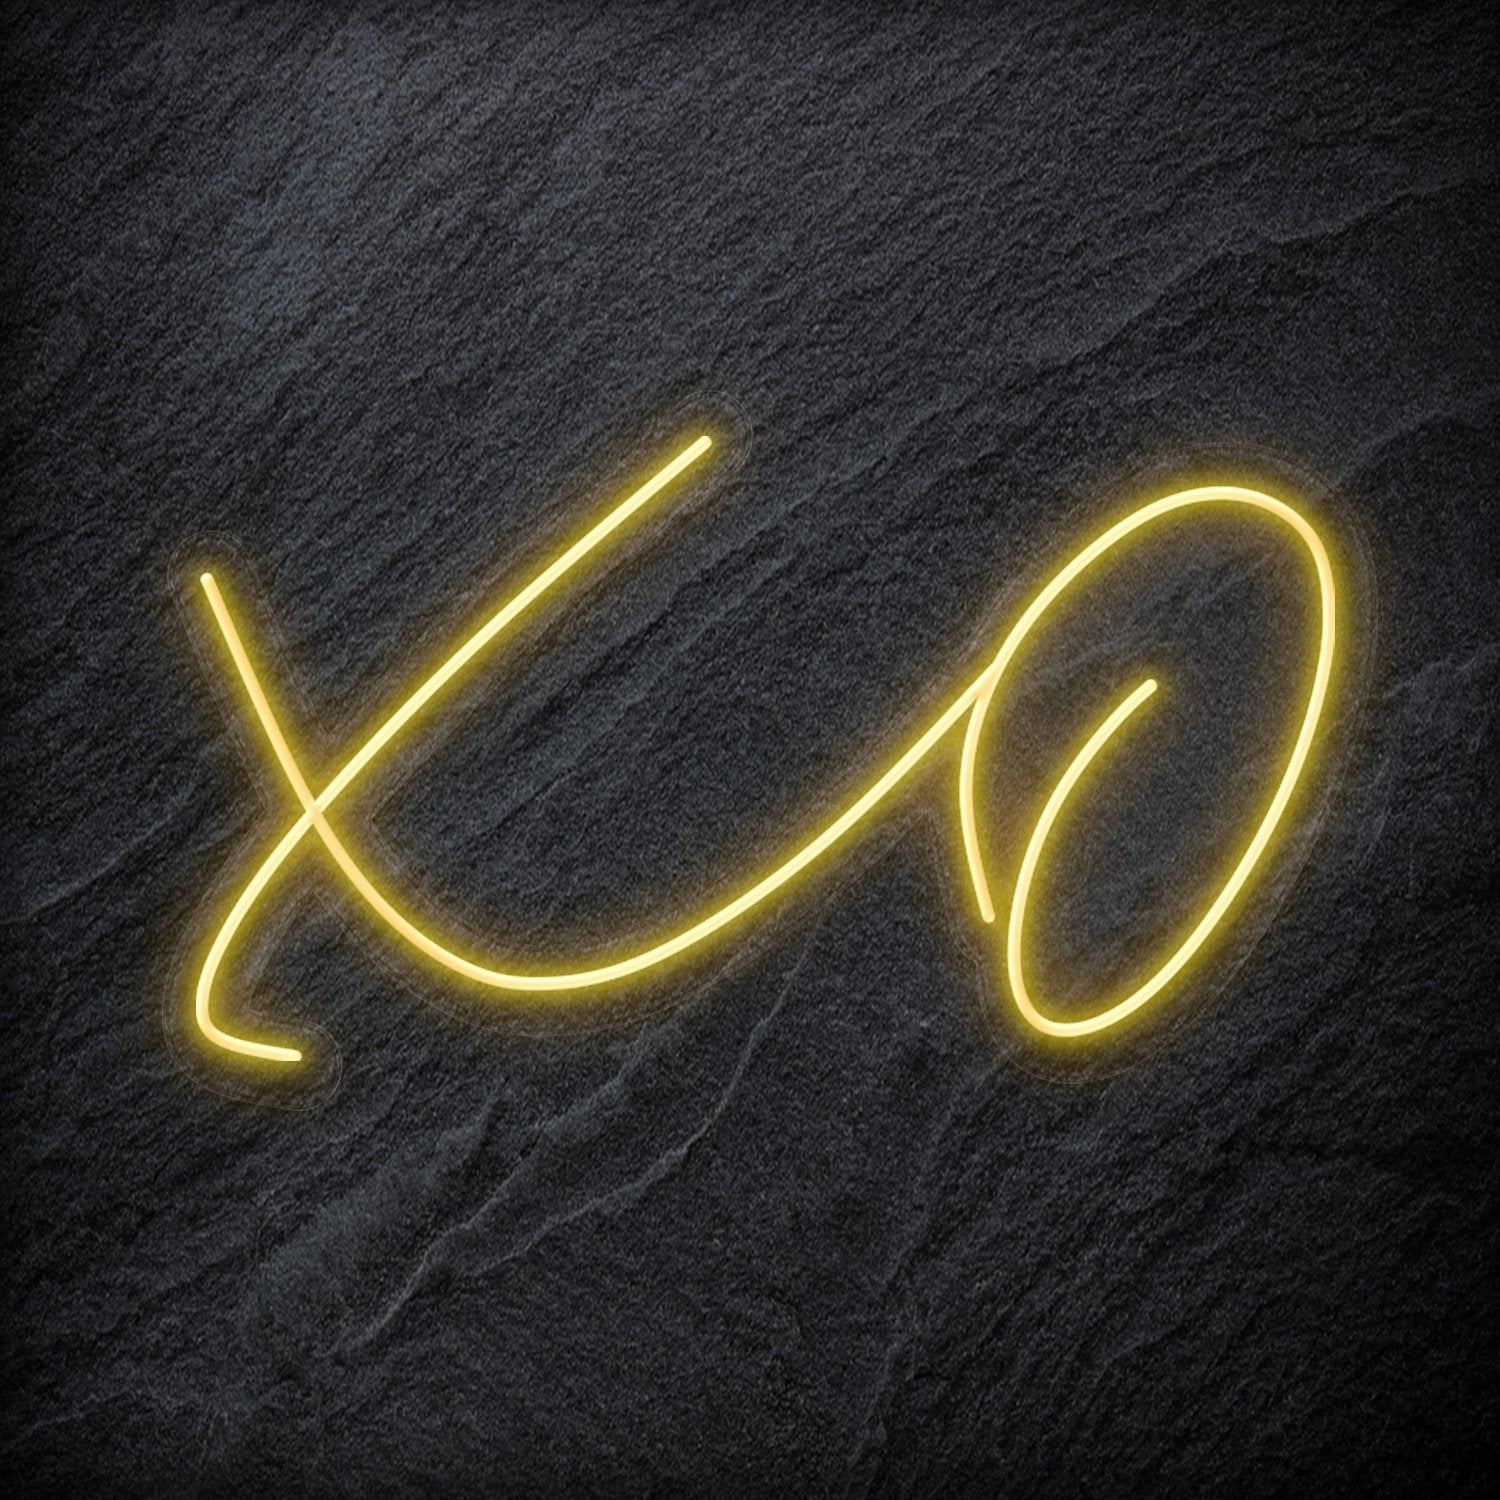 "Xo" LED Neonschild Sign Schriftzug - NEONEVERGLOW